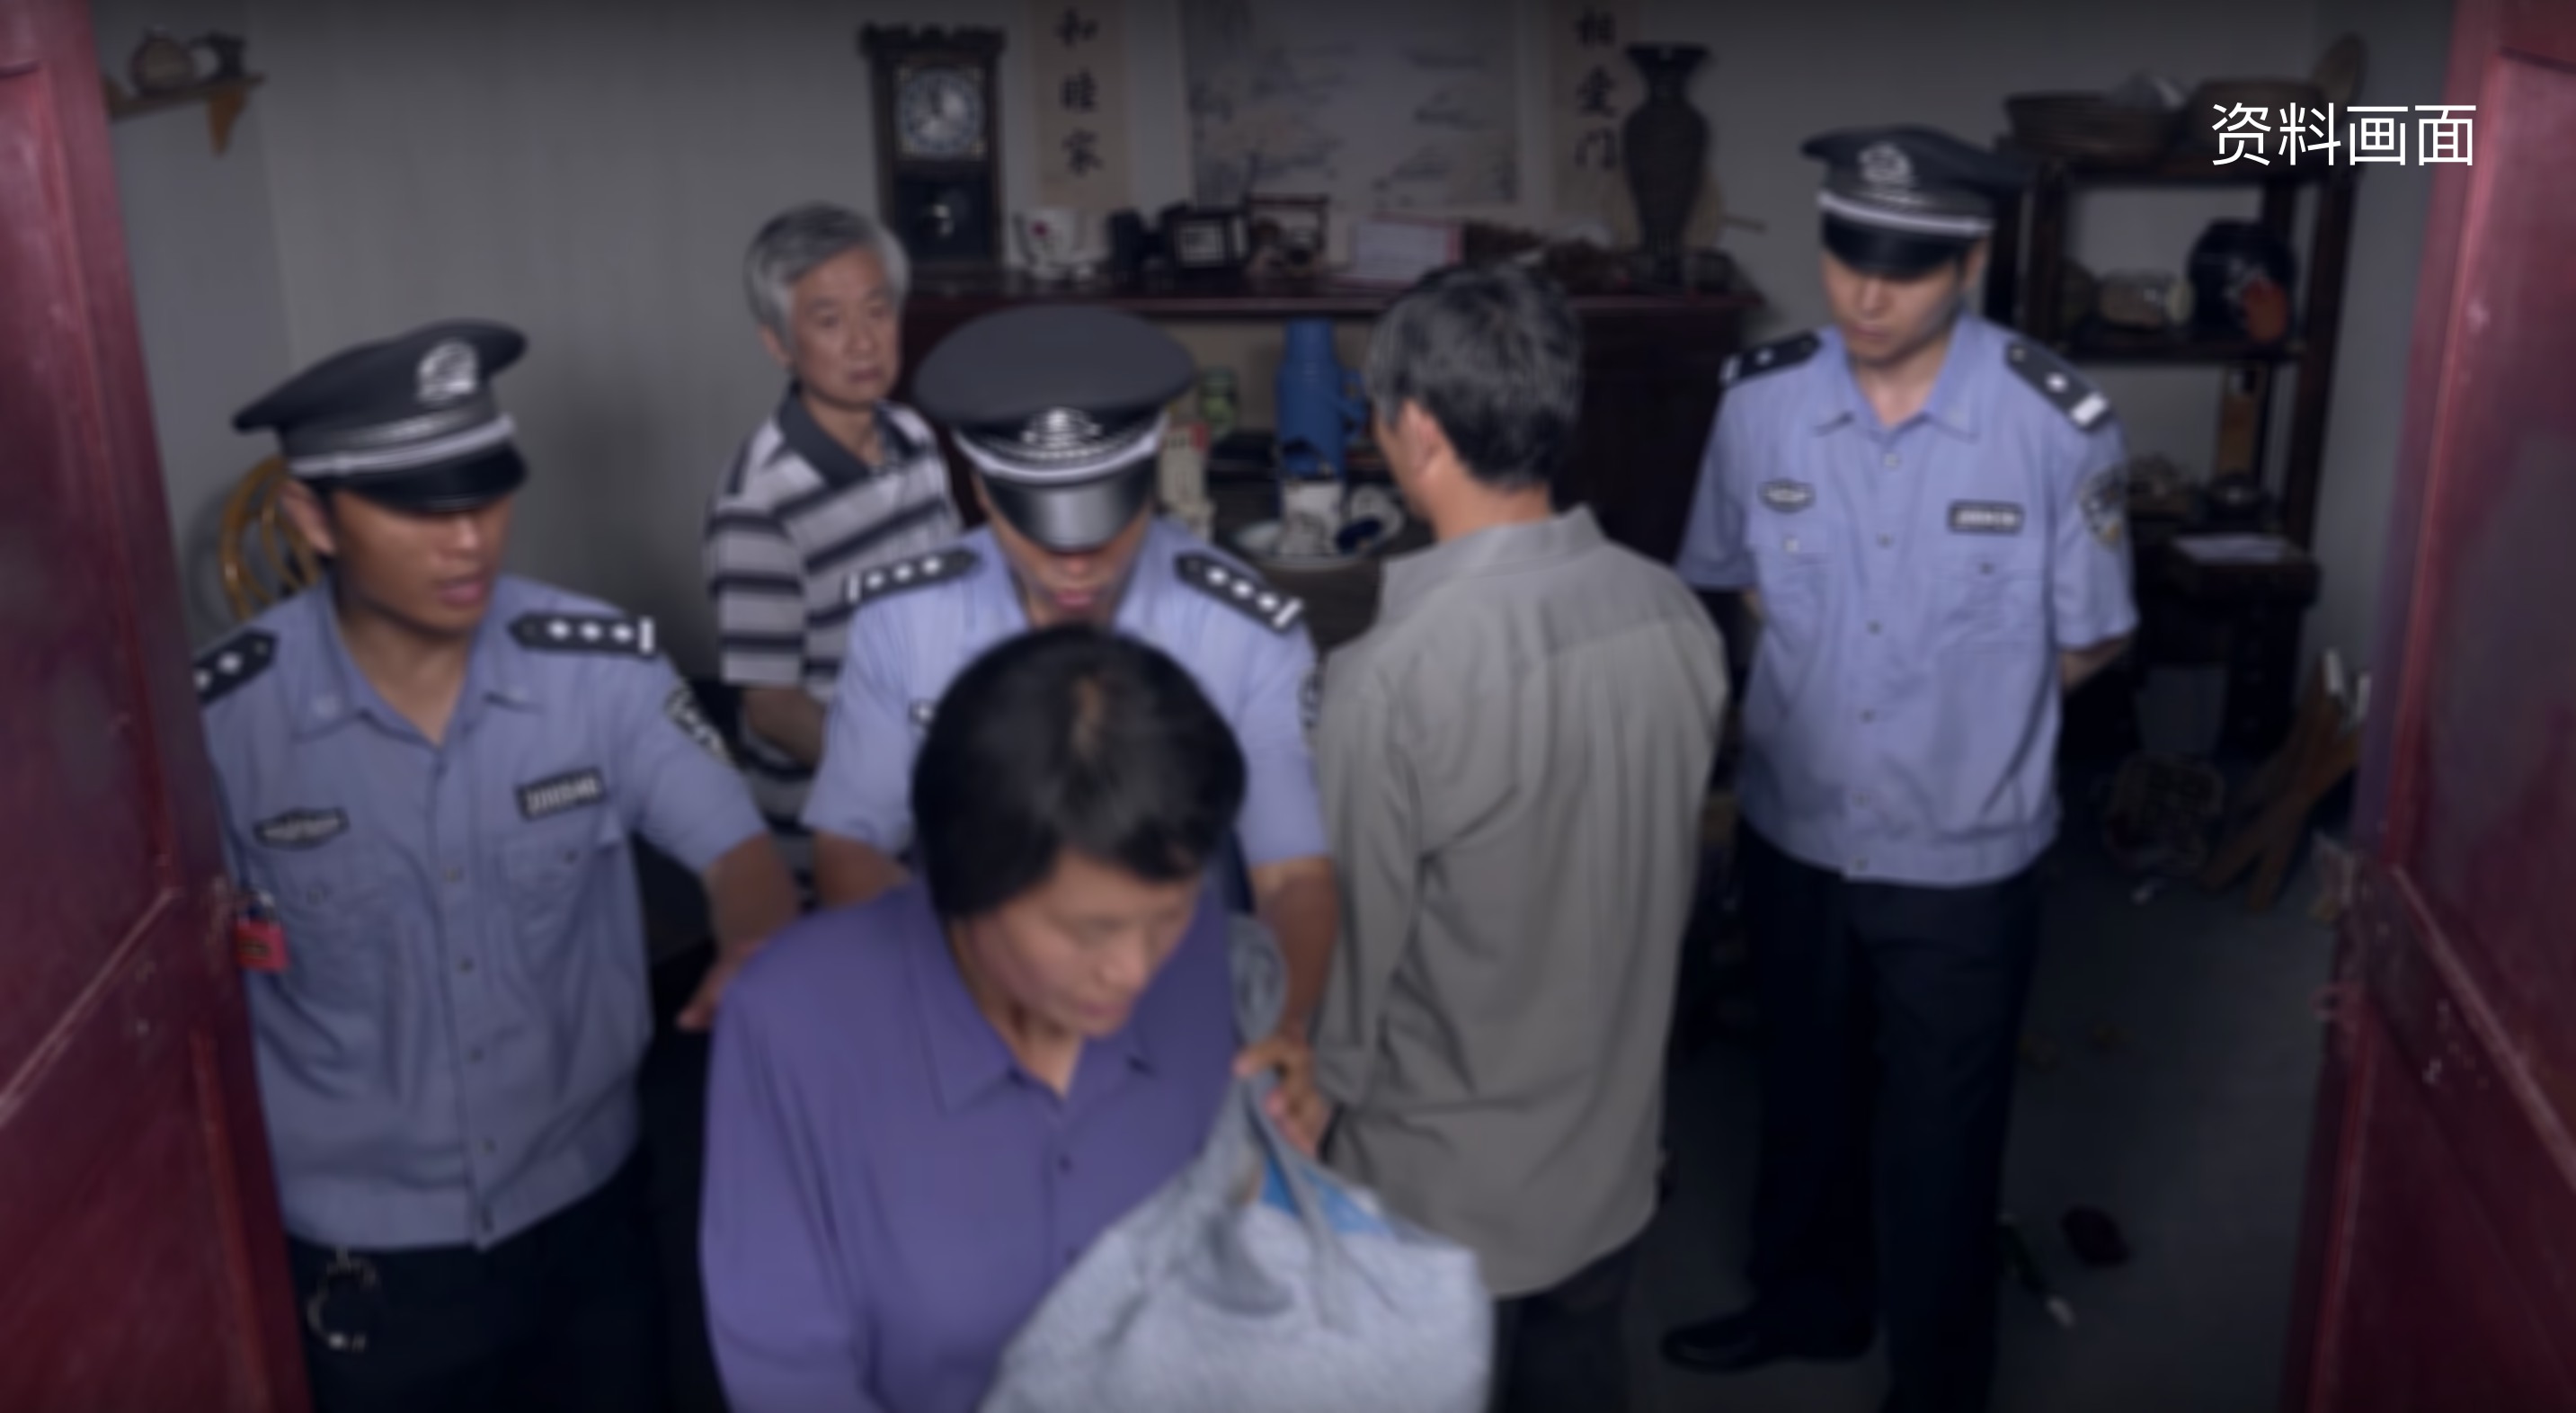 中共警察抓捕基督徒